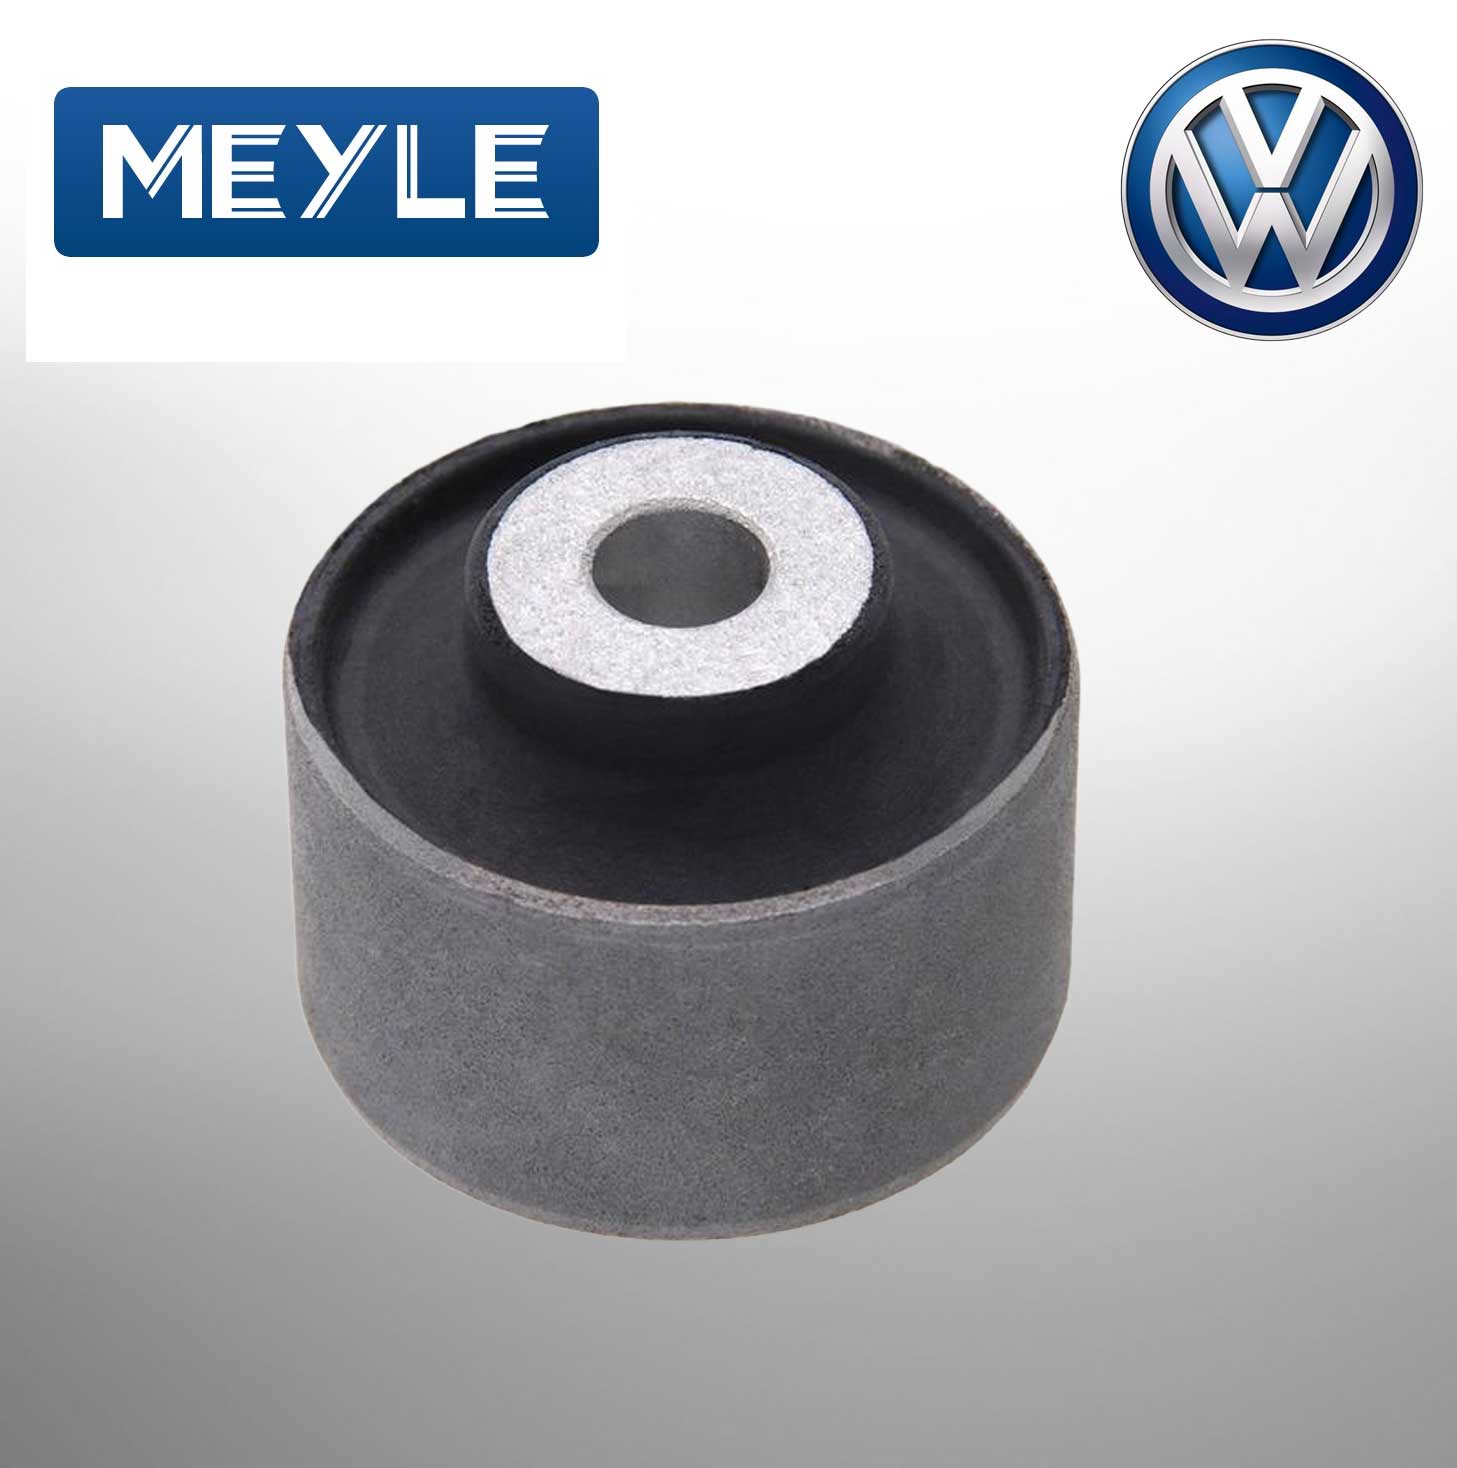 MEYLE BUSH Q5. A4. A5. A8 (100 407 0070/HD) FOR Volkswagen 8D0407515C